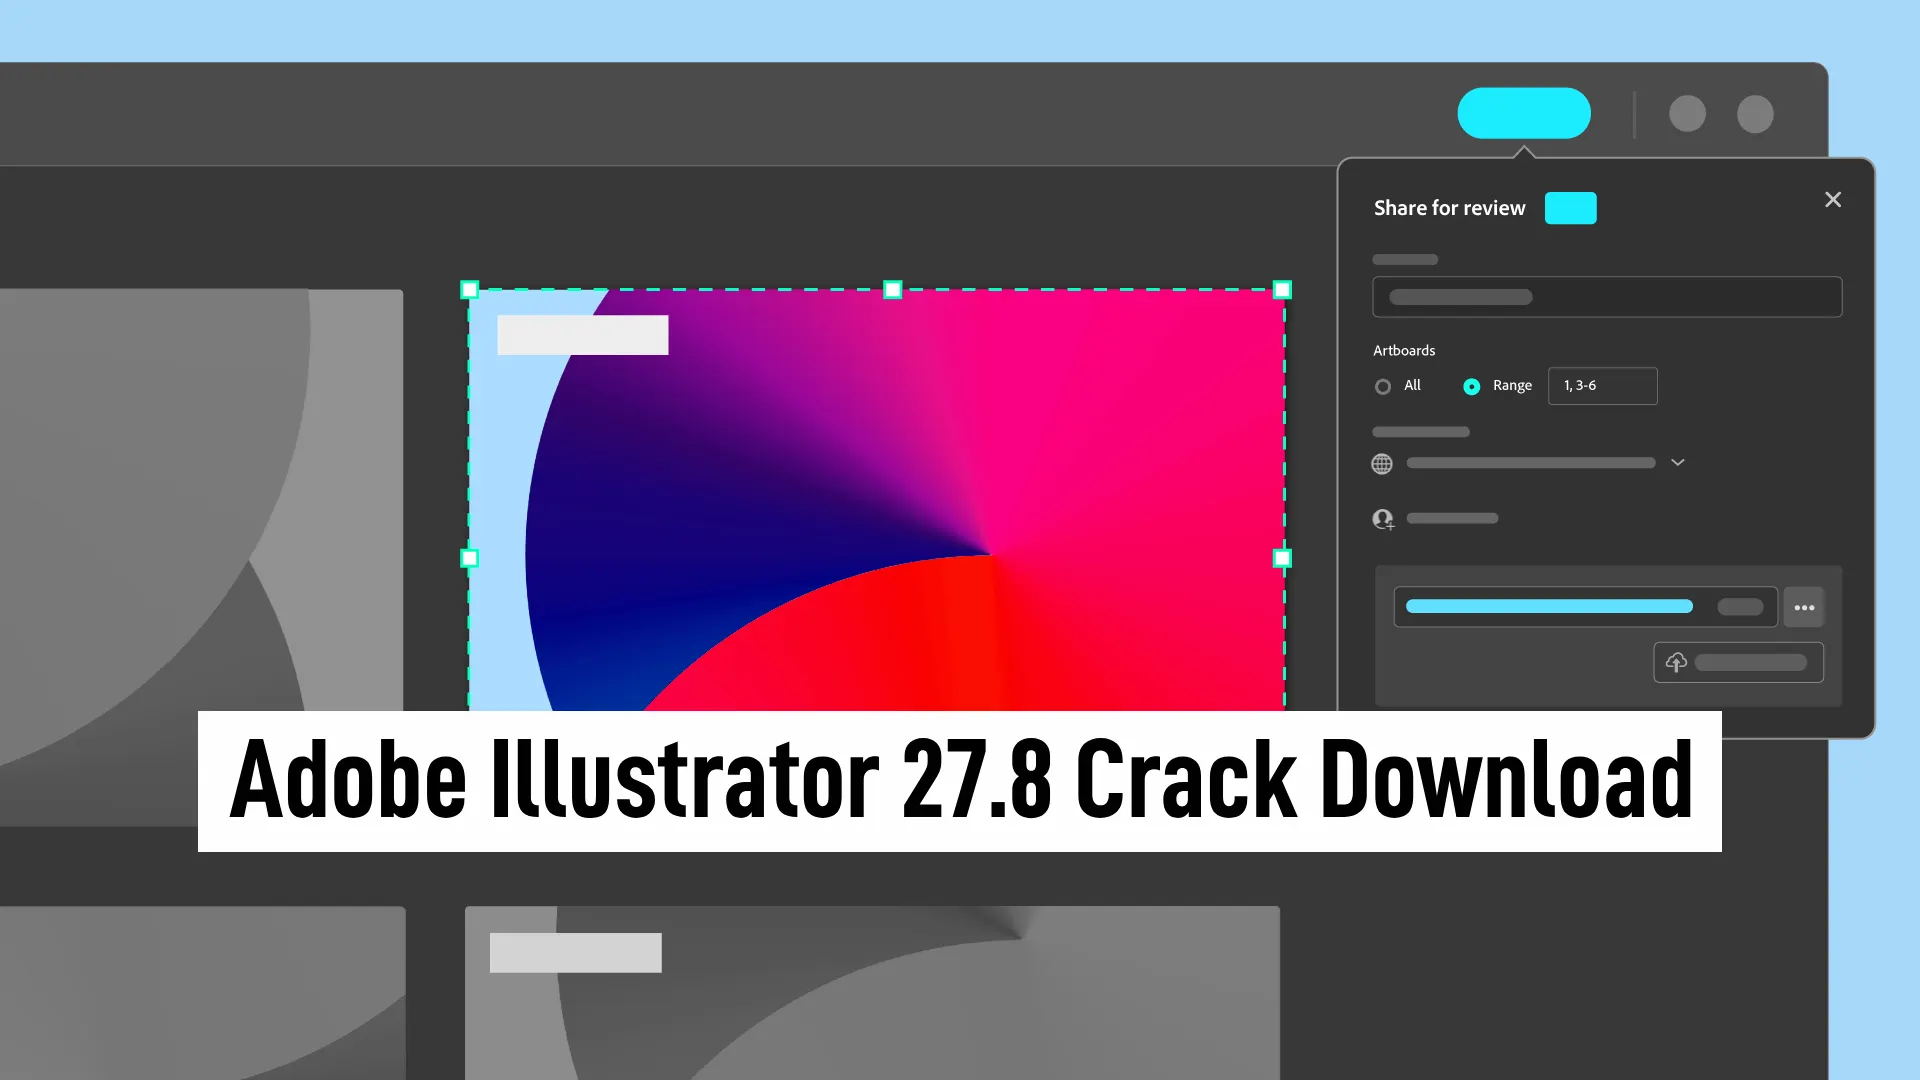 Adobe Illustrator 27.8 Crack Download